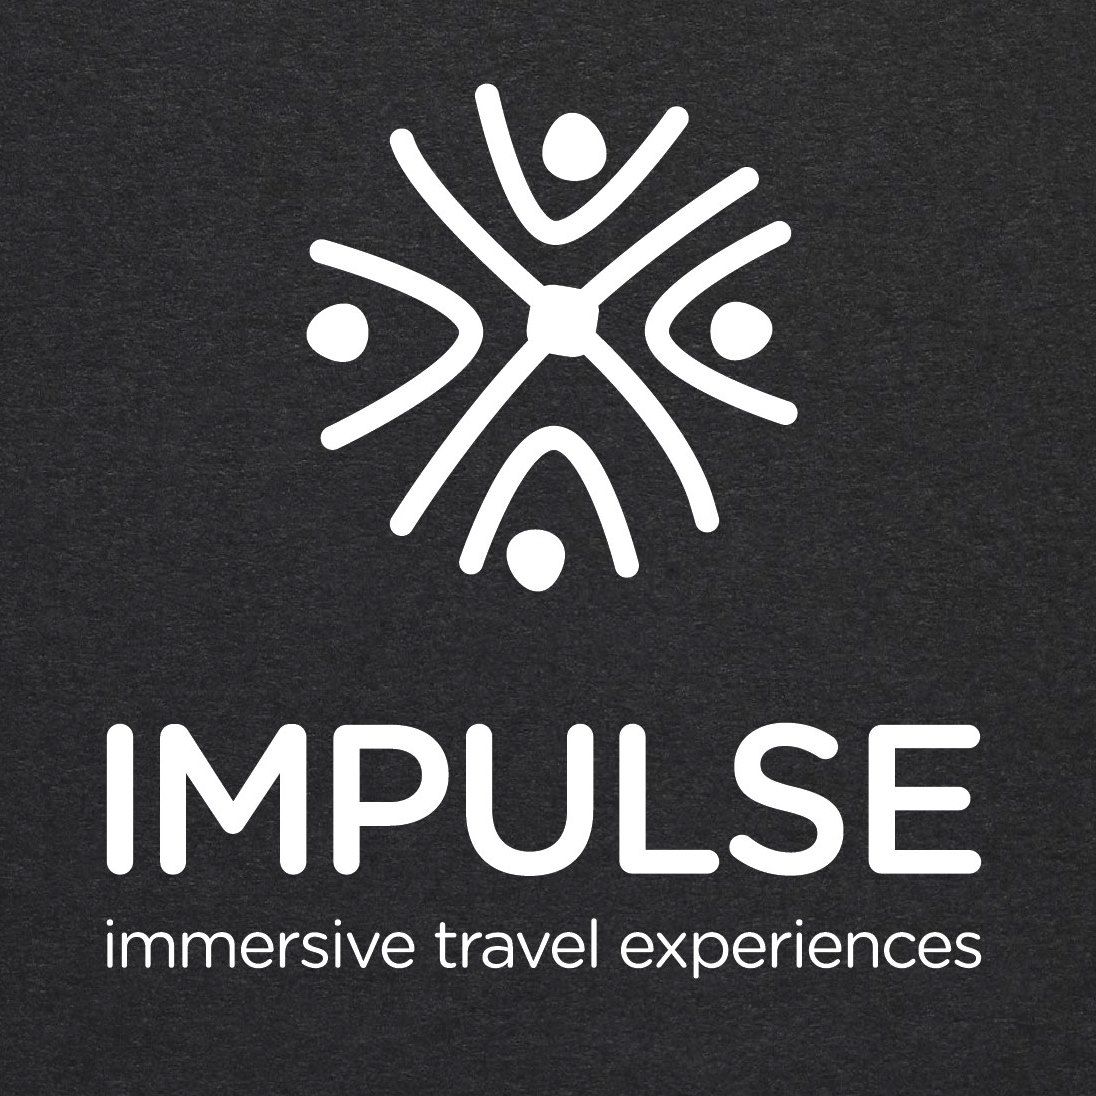 impulse travel design